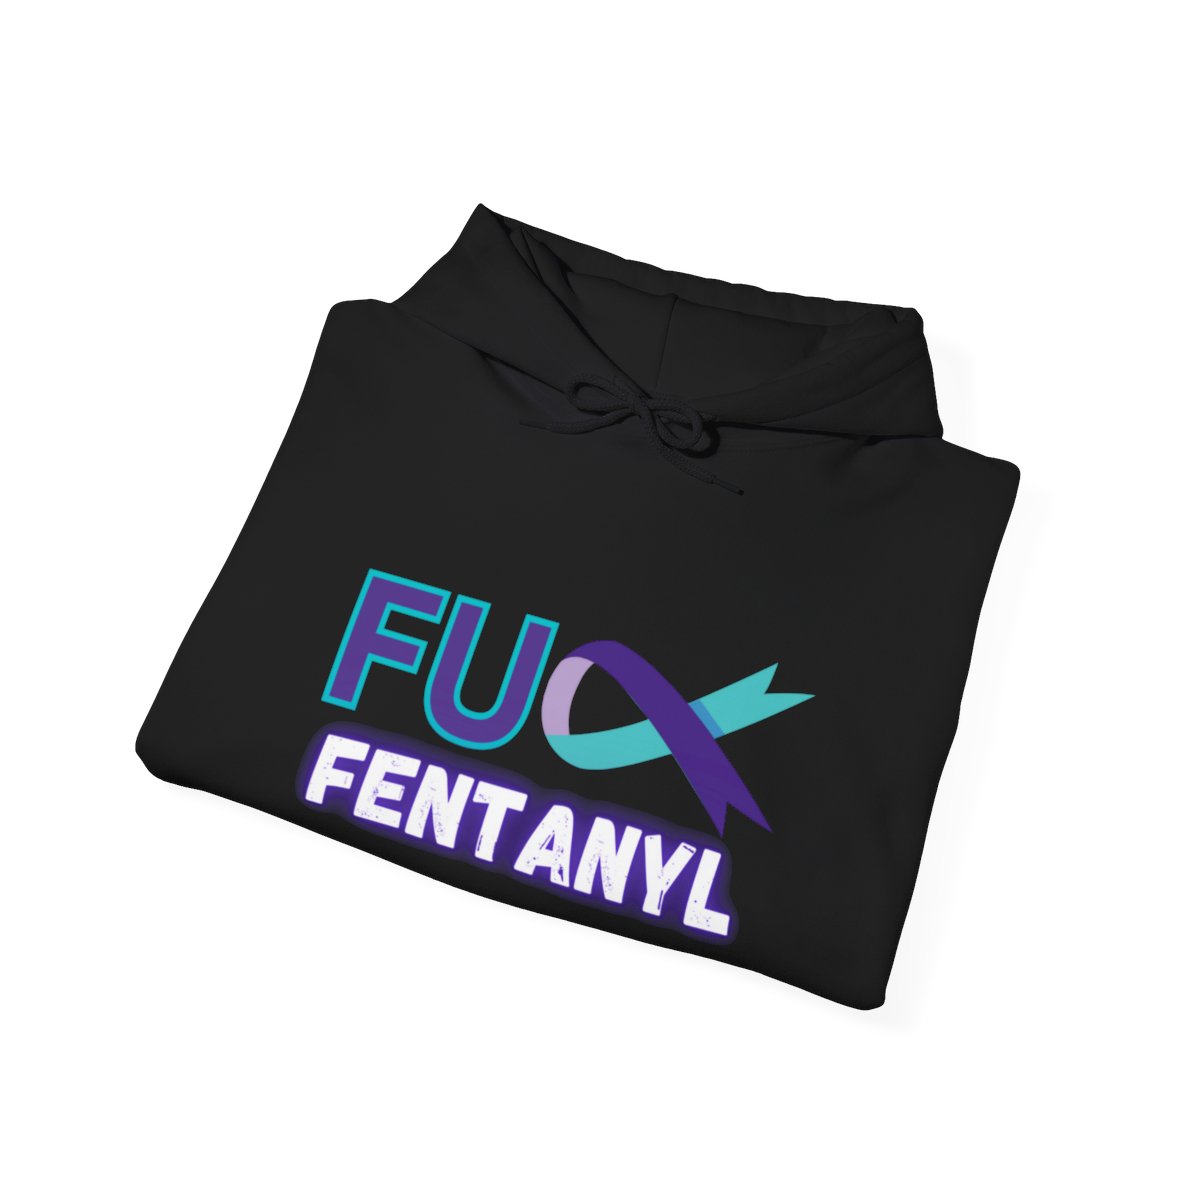 #fuckfentanyl - Unisex Hooded Sweatshirt product thumbnail image